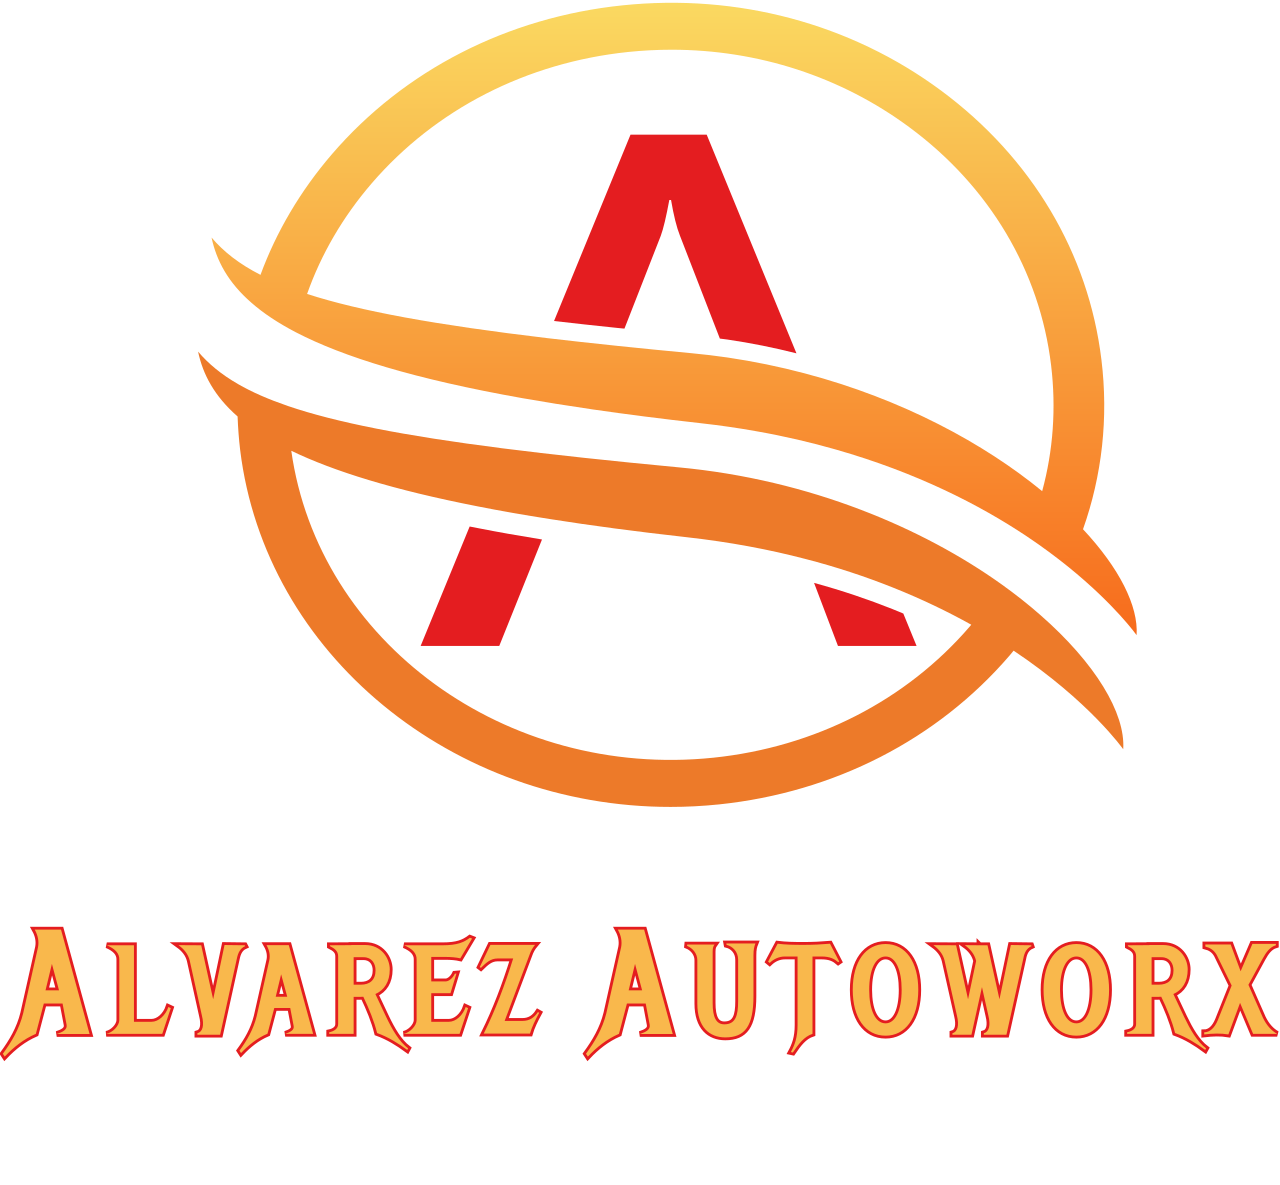 Alvarez Autoworx 's logo